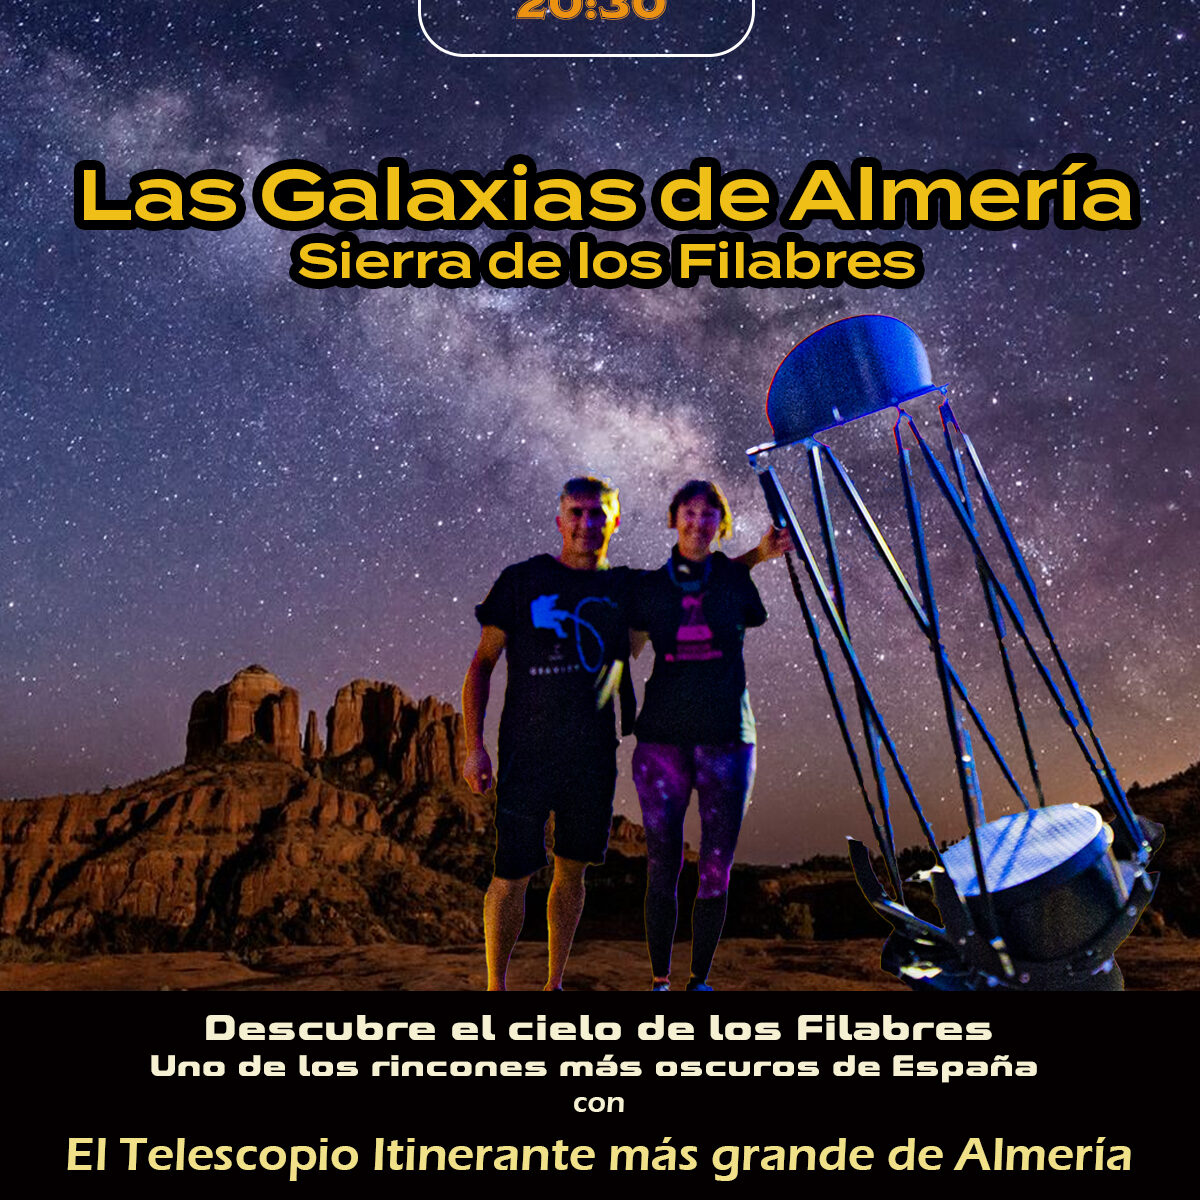 astroturismo Almeria, observación del cielo, gran telescopio de Almeria